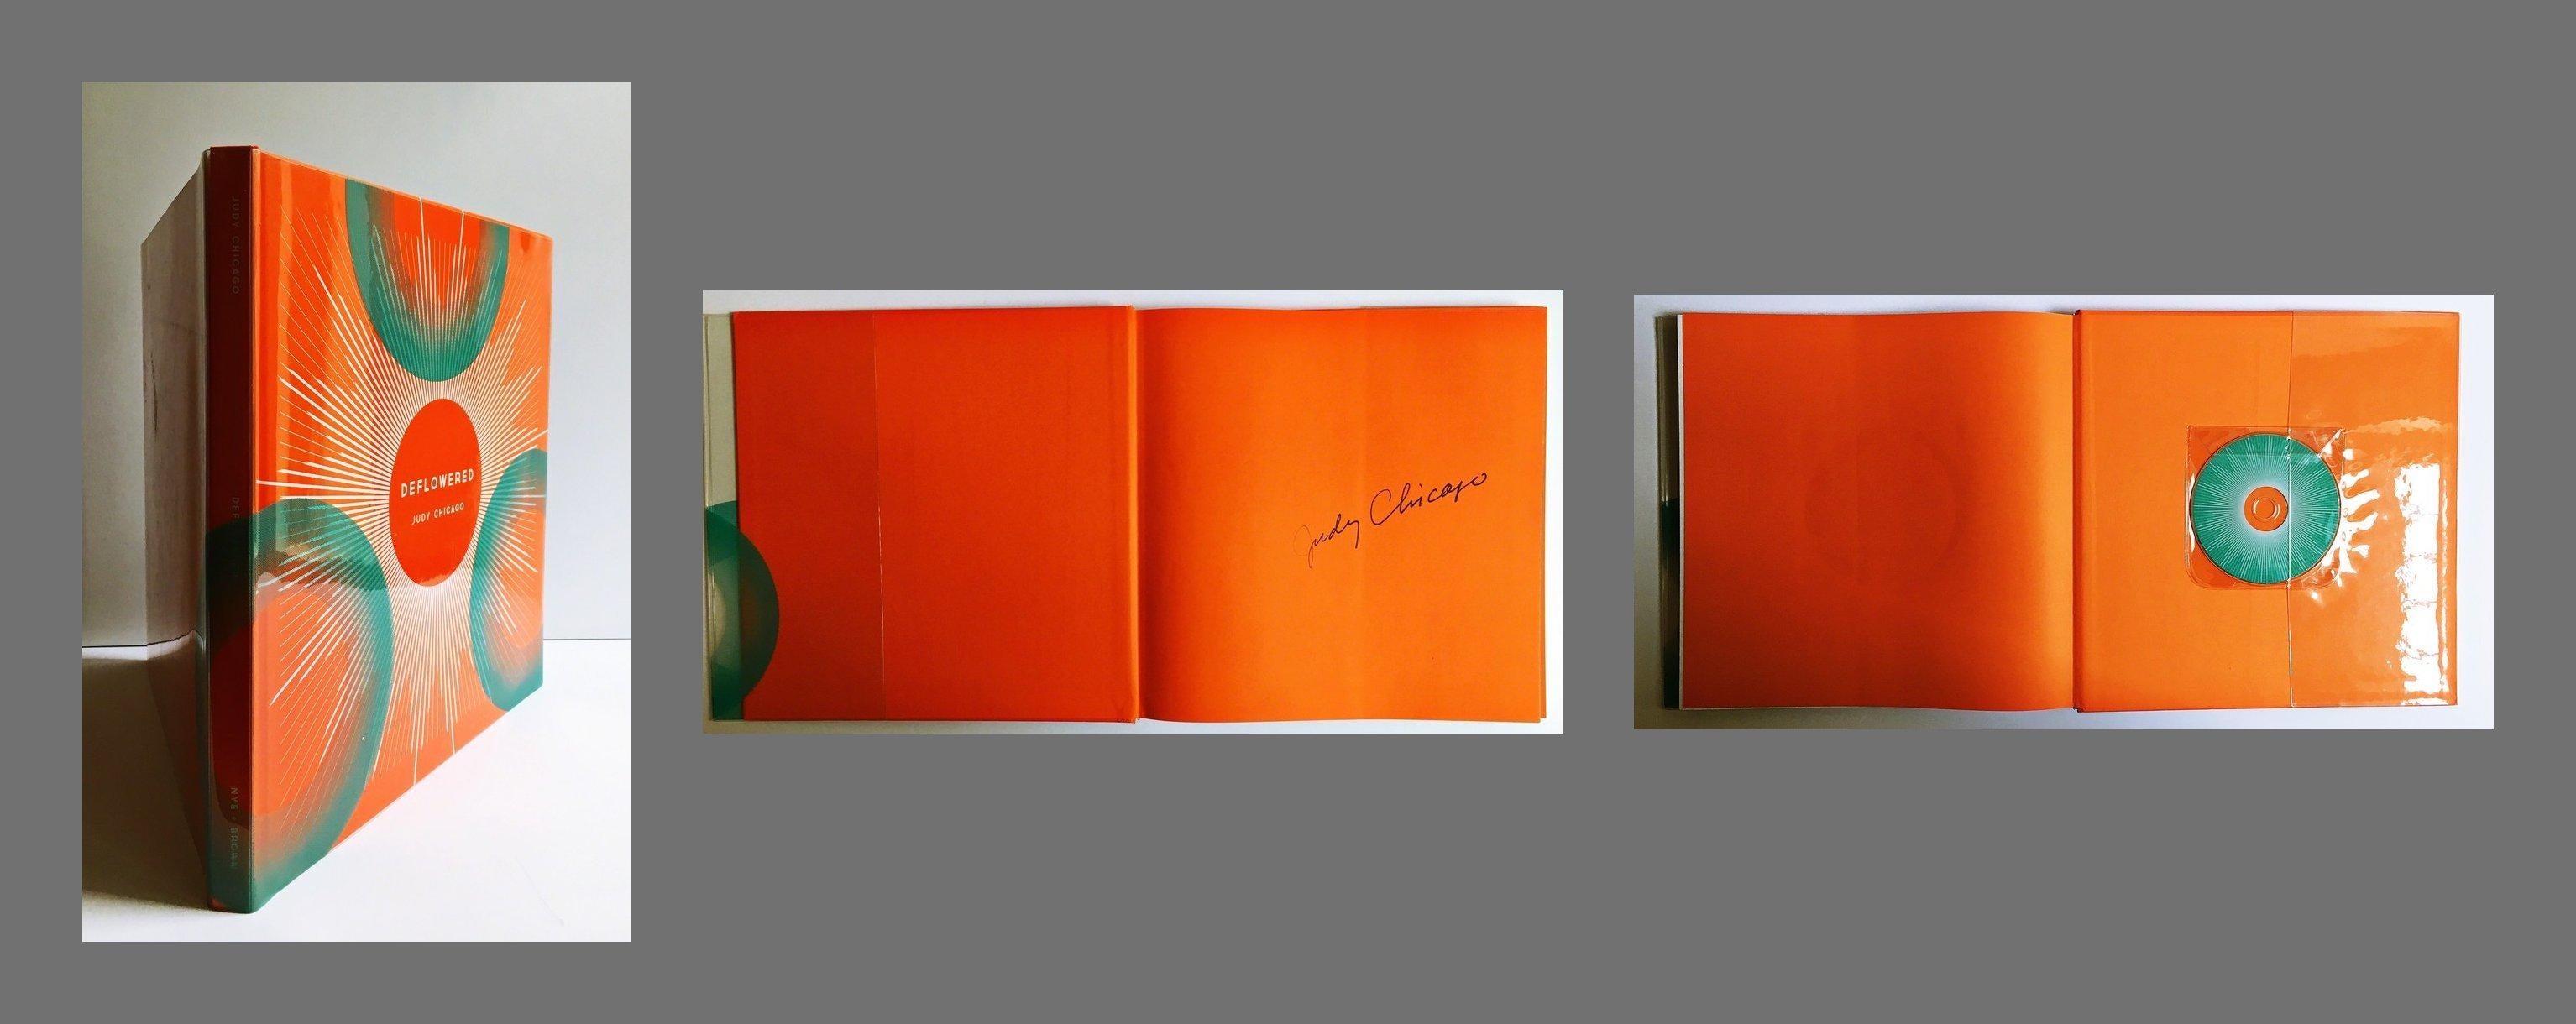 Livre fleuri (livre signé à la main) - Art de Judy Chicago